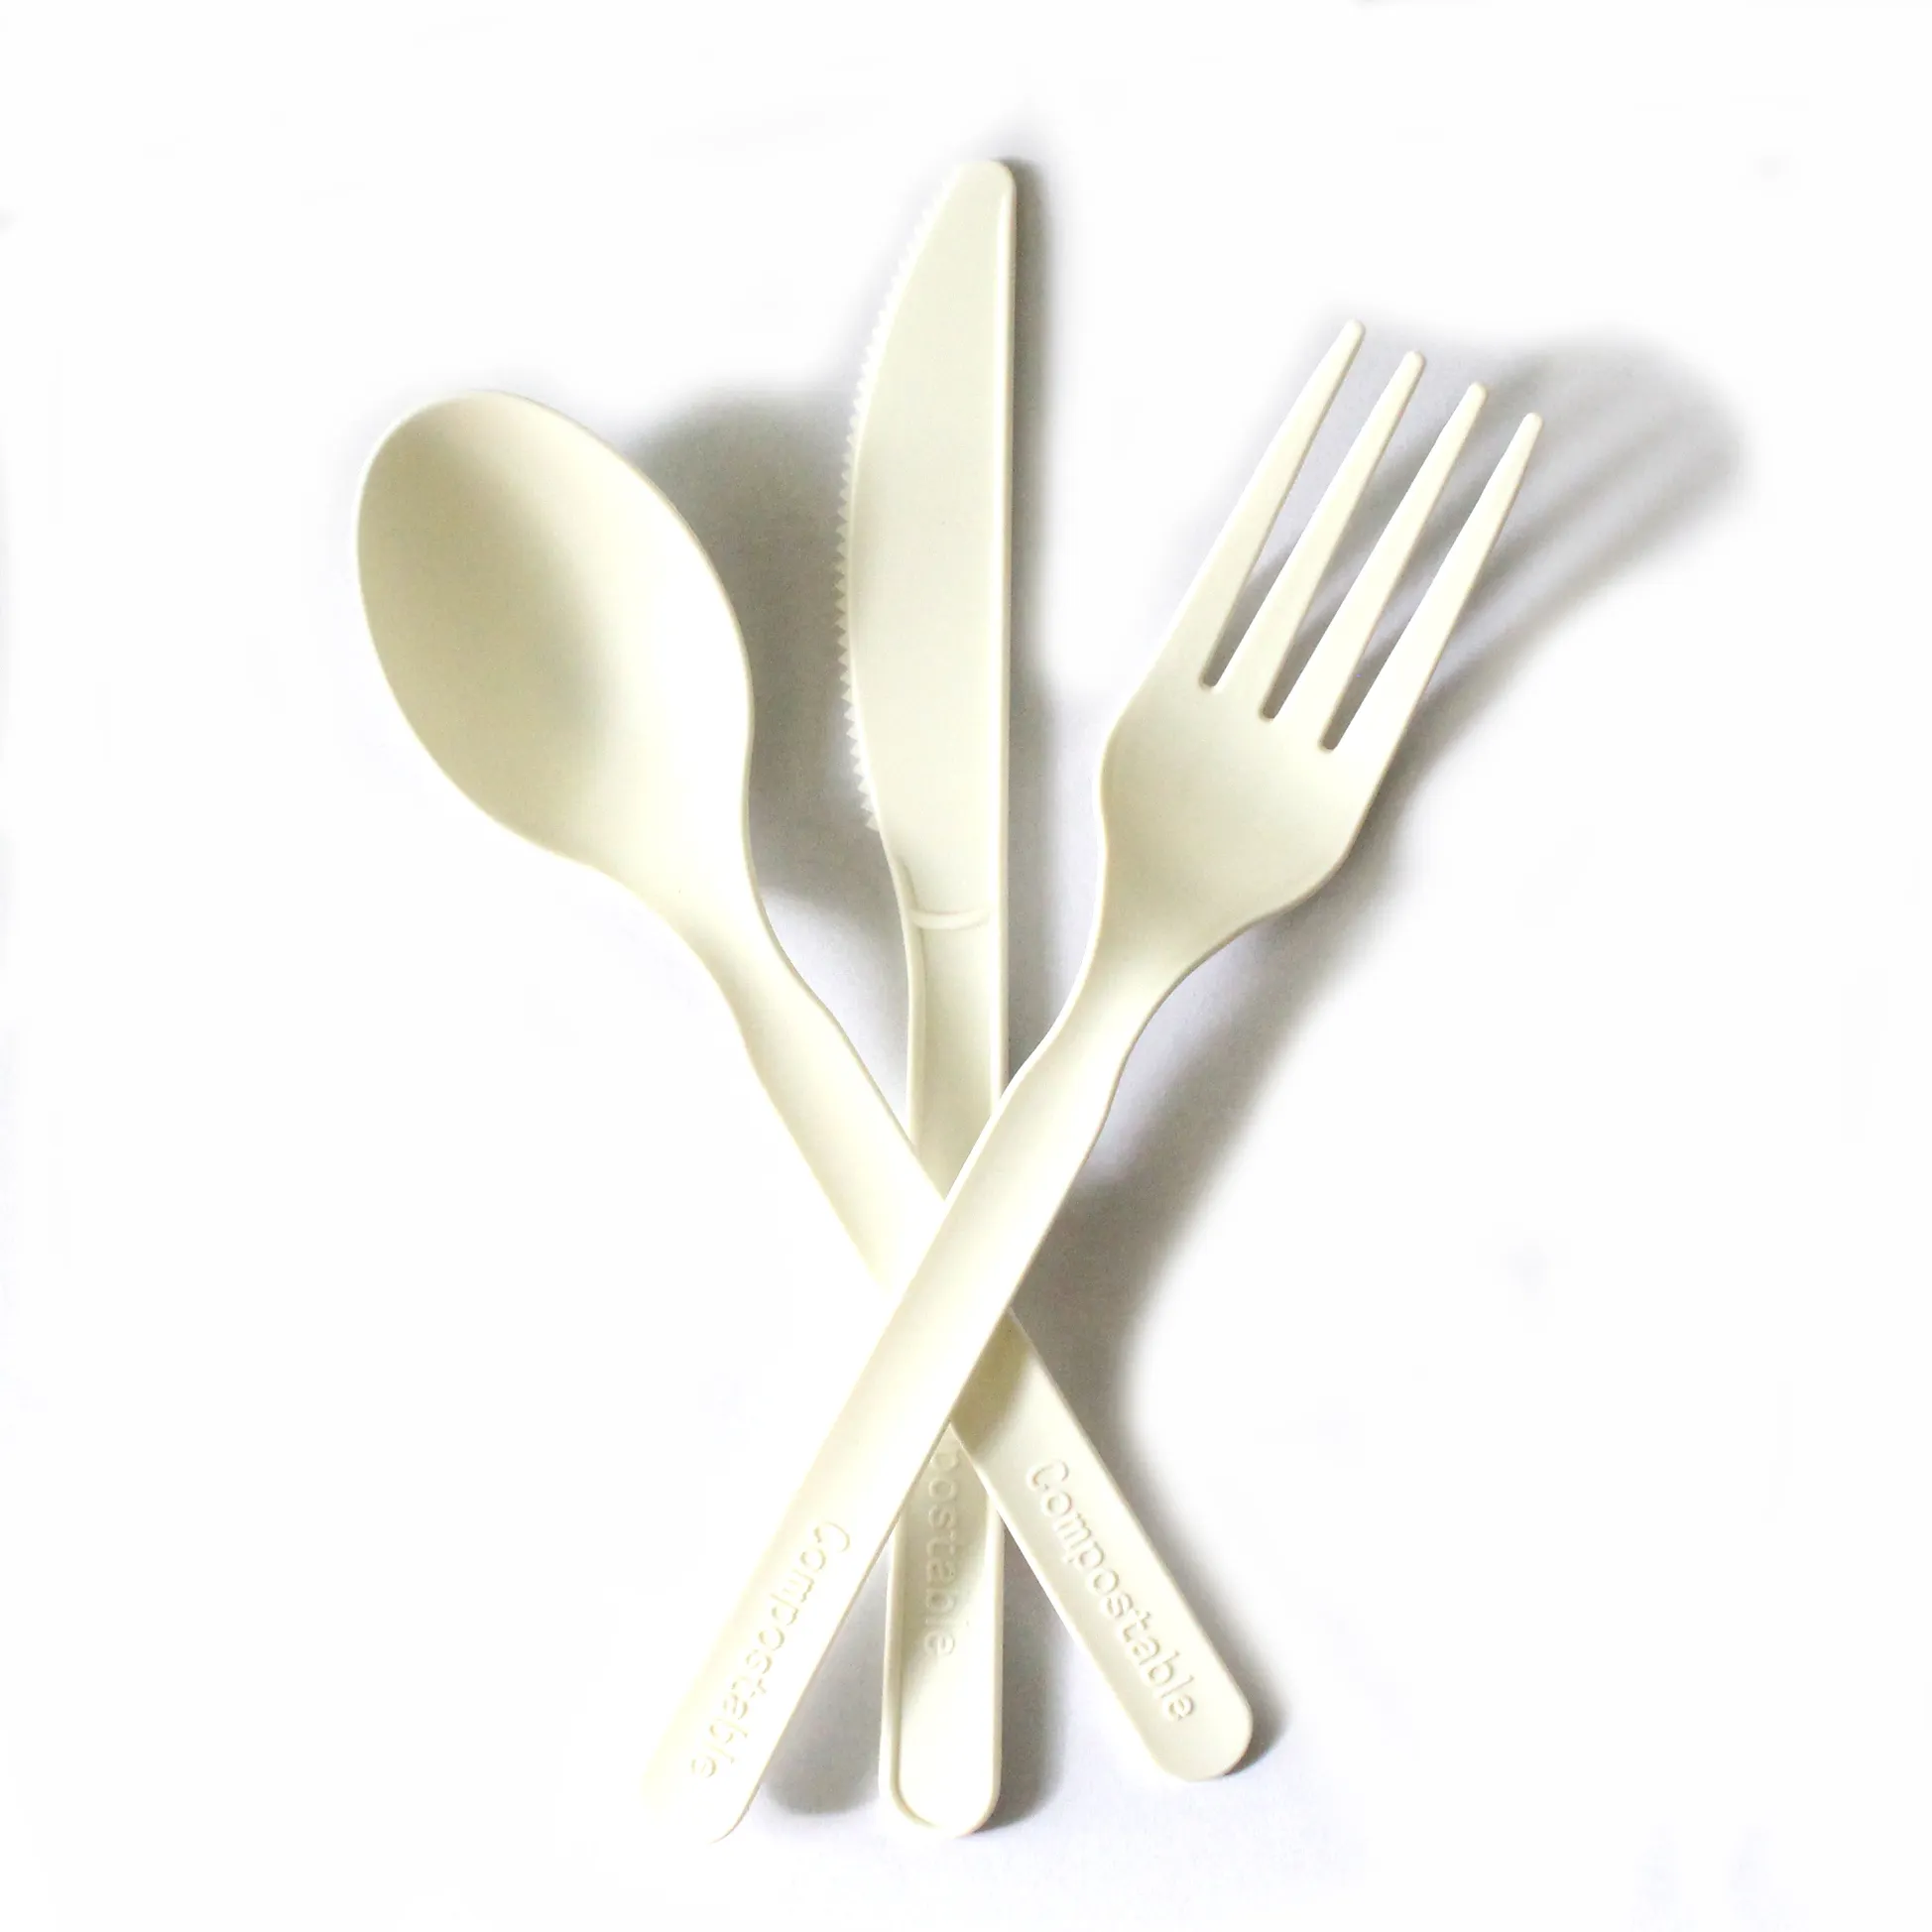 Grosir stok tersedia grosir biodegradable CPLA jagung pati sekali pakai non plastik 6 inci sendok pisau garpu set alat makan stabil